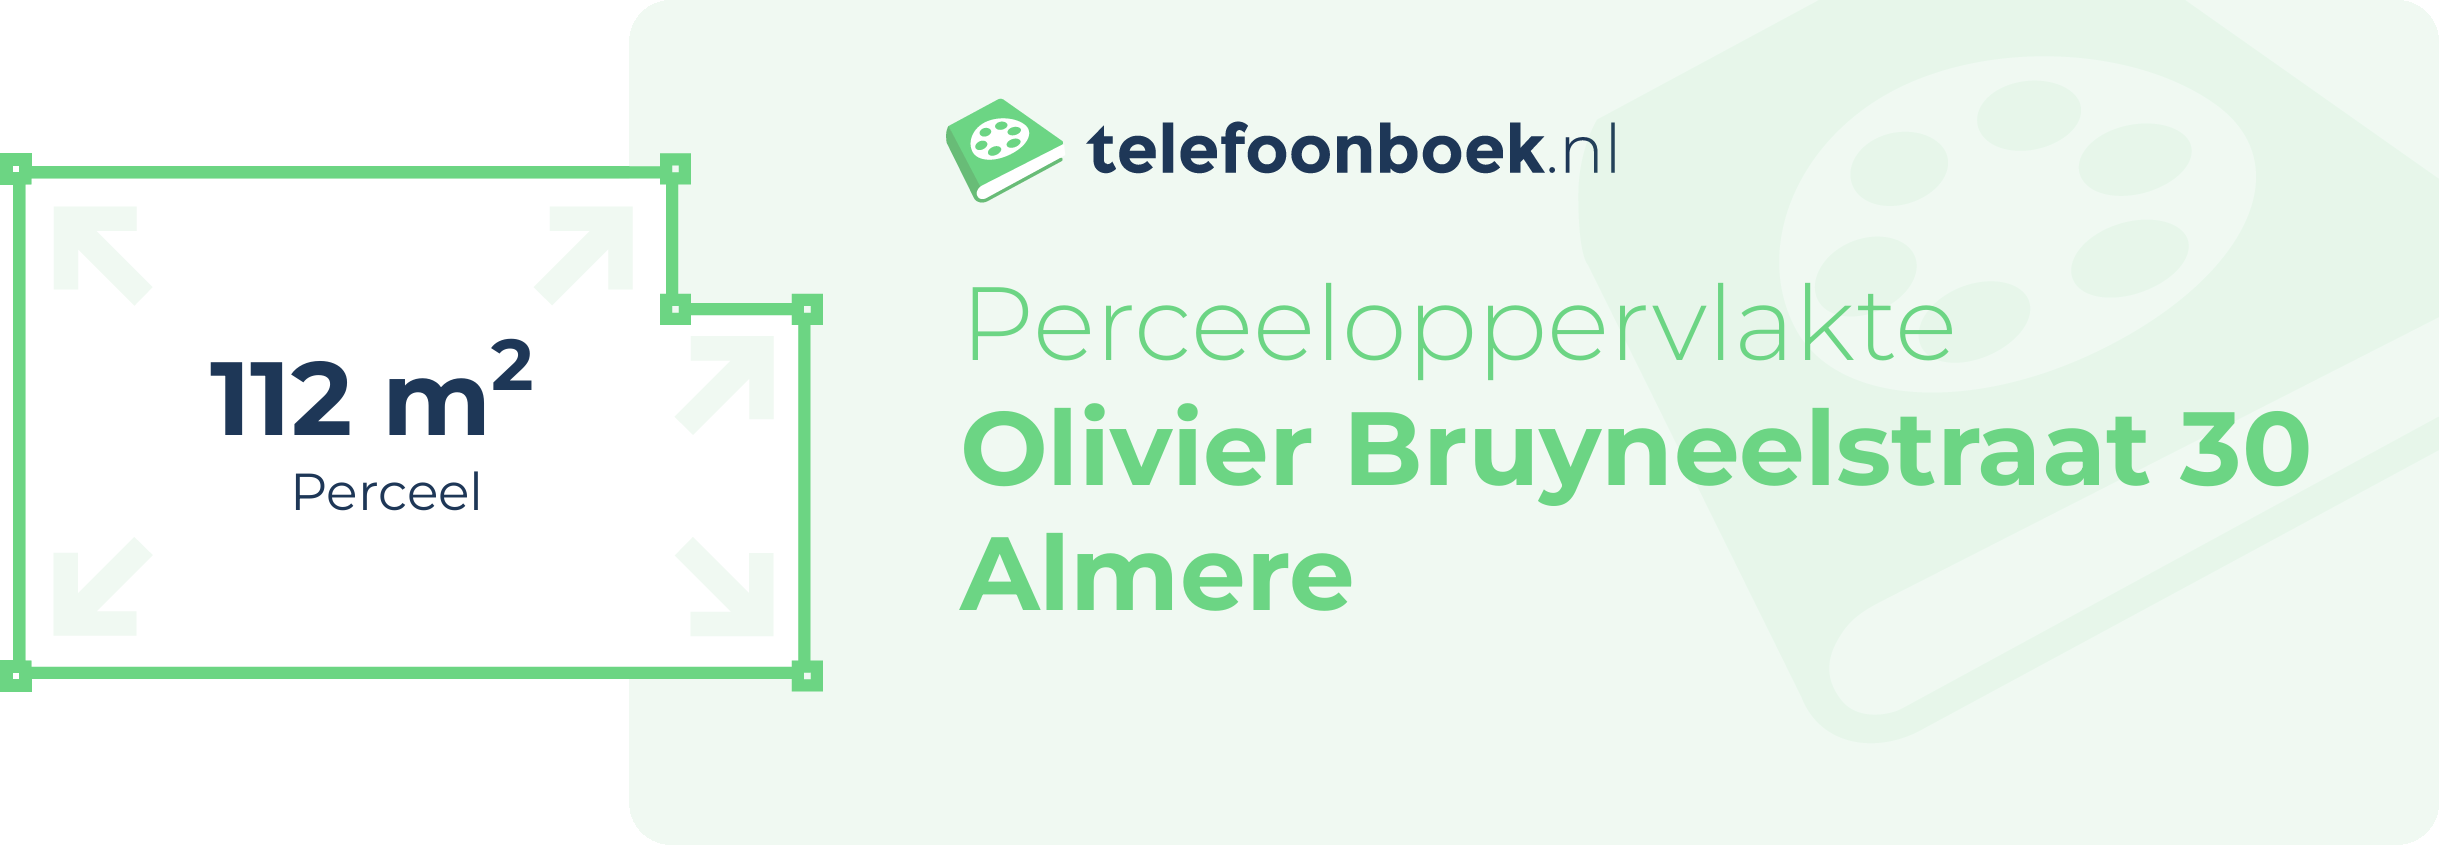 Perceeloppervlakte Olivier Bruyneelstraat 30 Almere